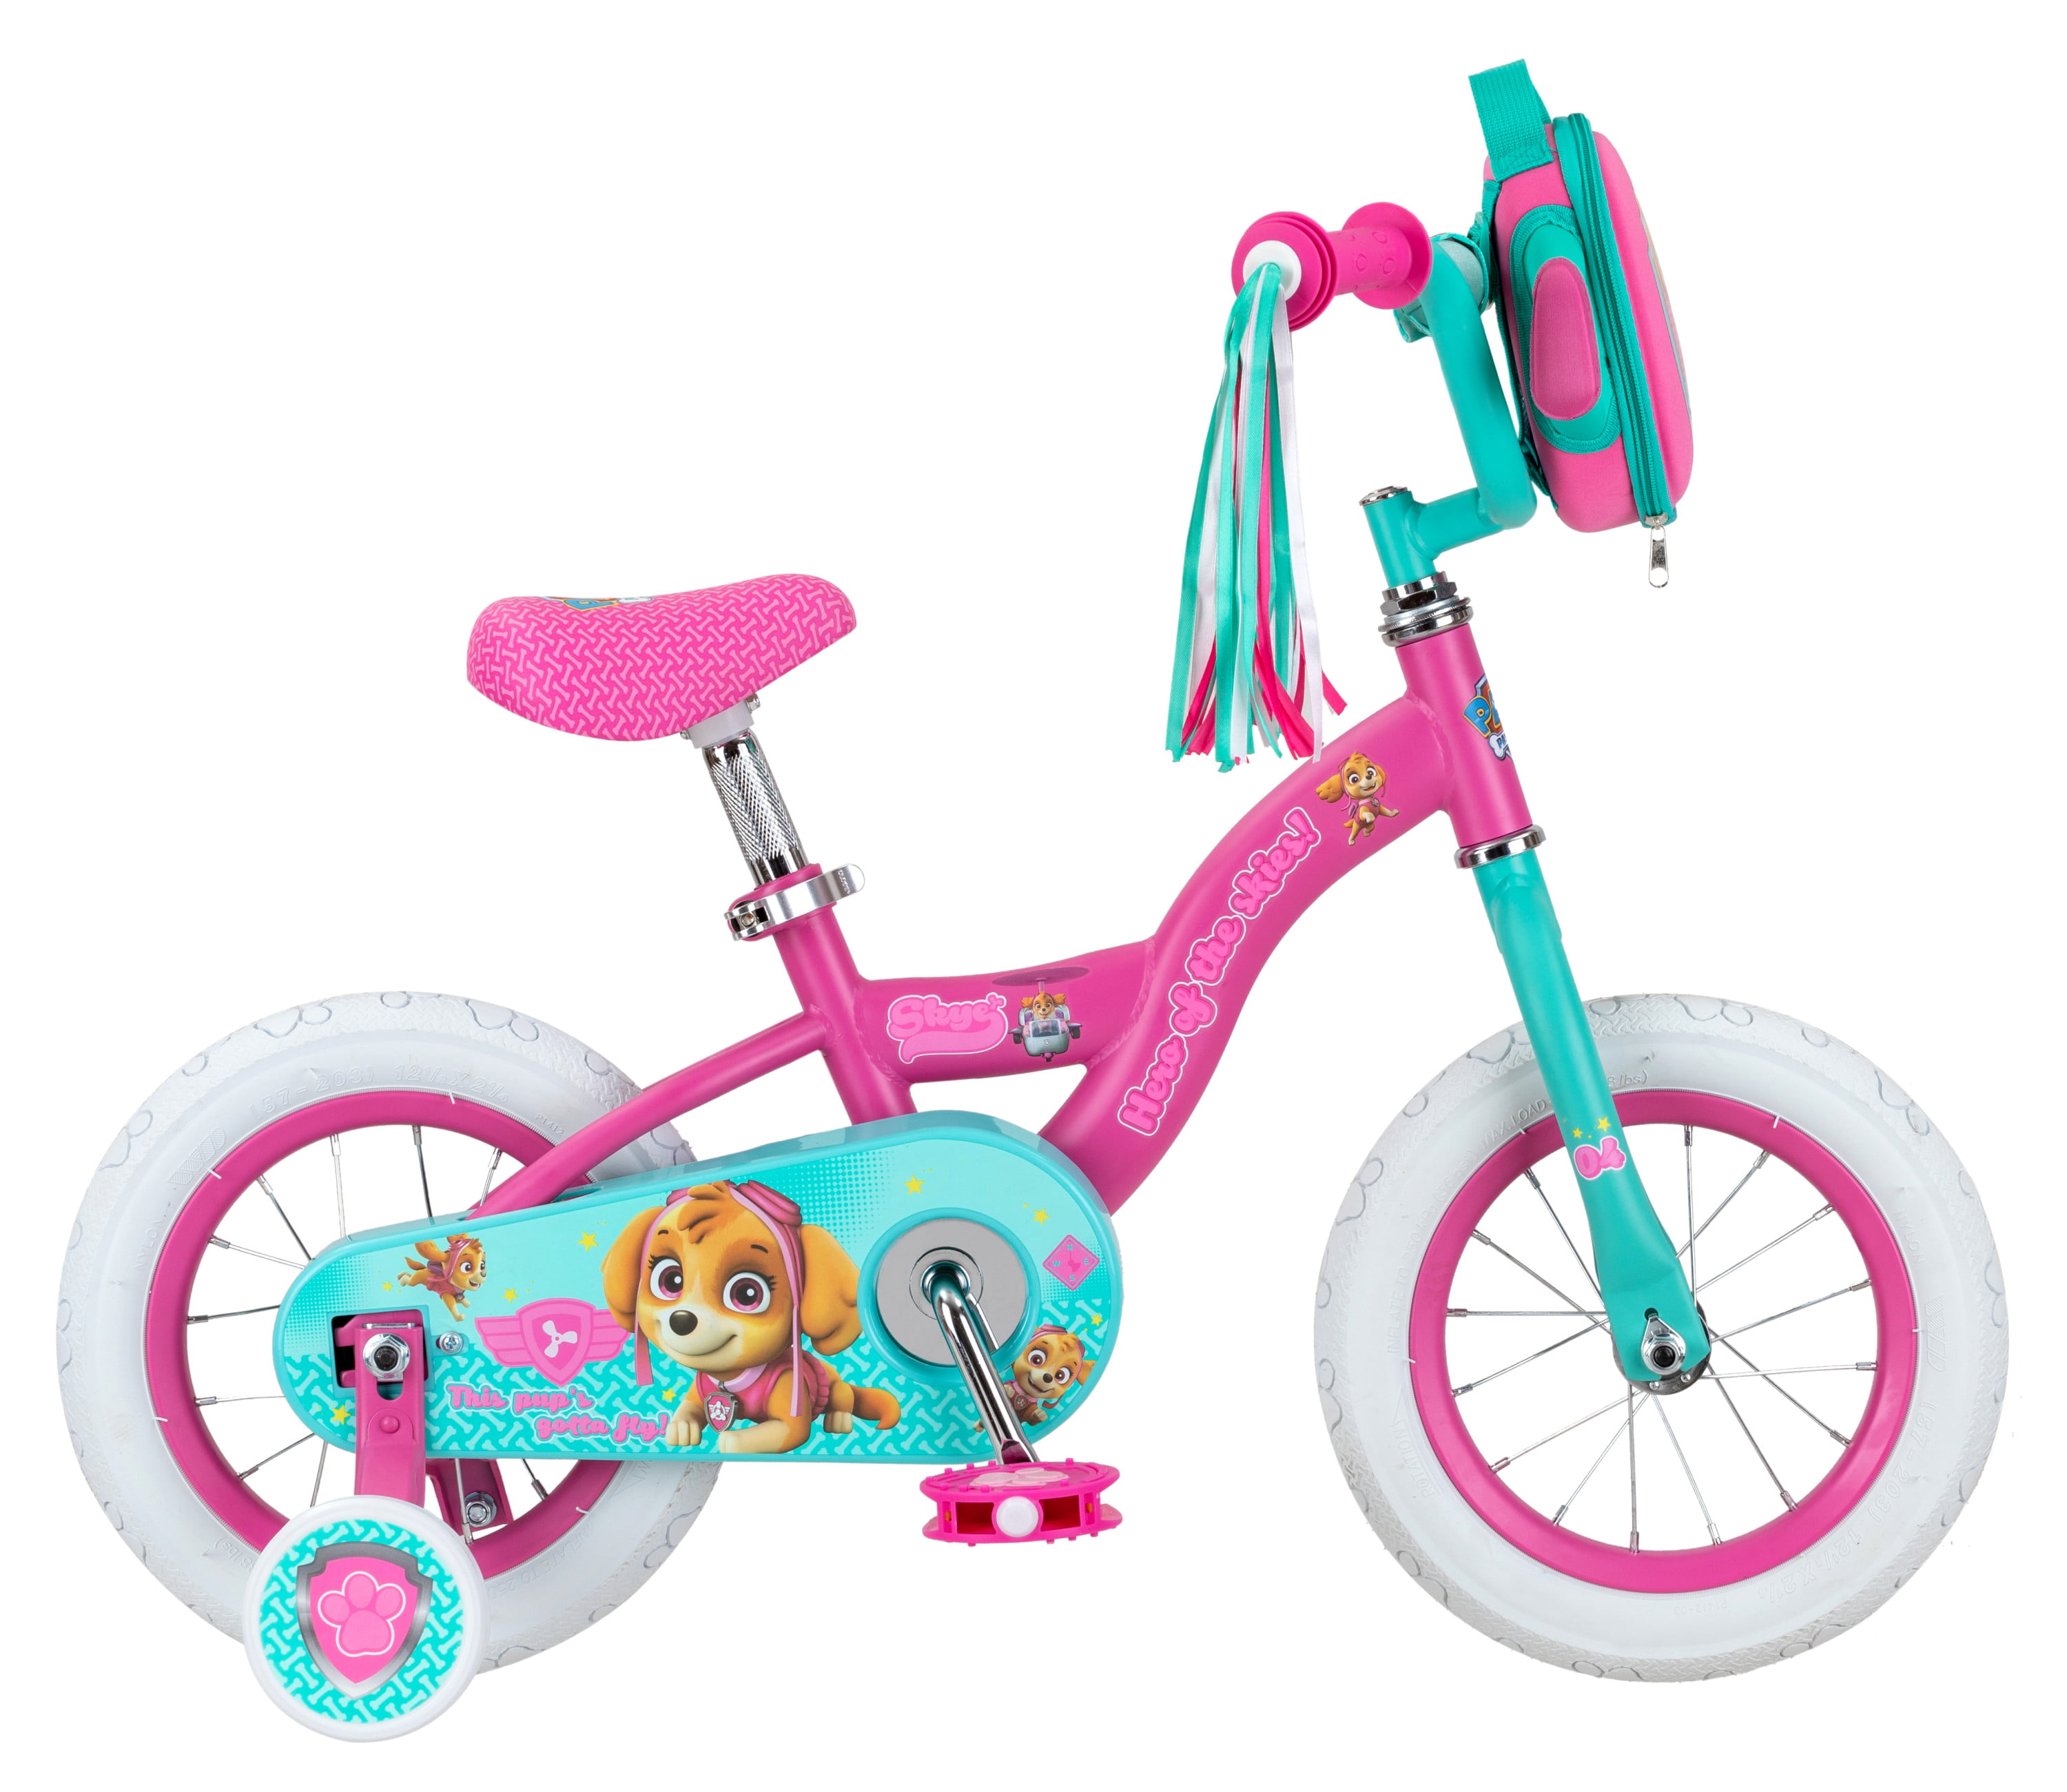 ages 2 to 4 Nickelodeon's PAW Patrol: Skye Sidewalk Bike pink 12 inch wheels 